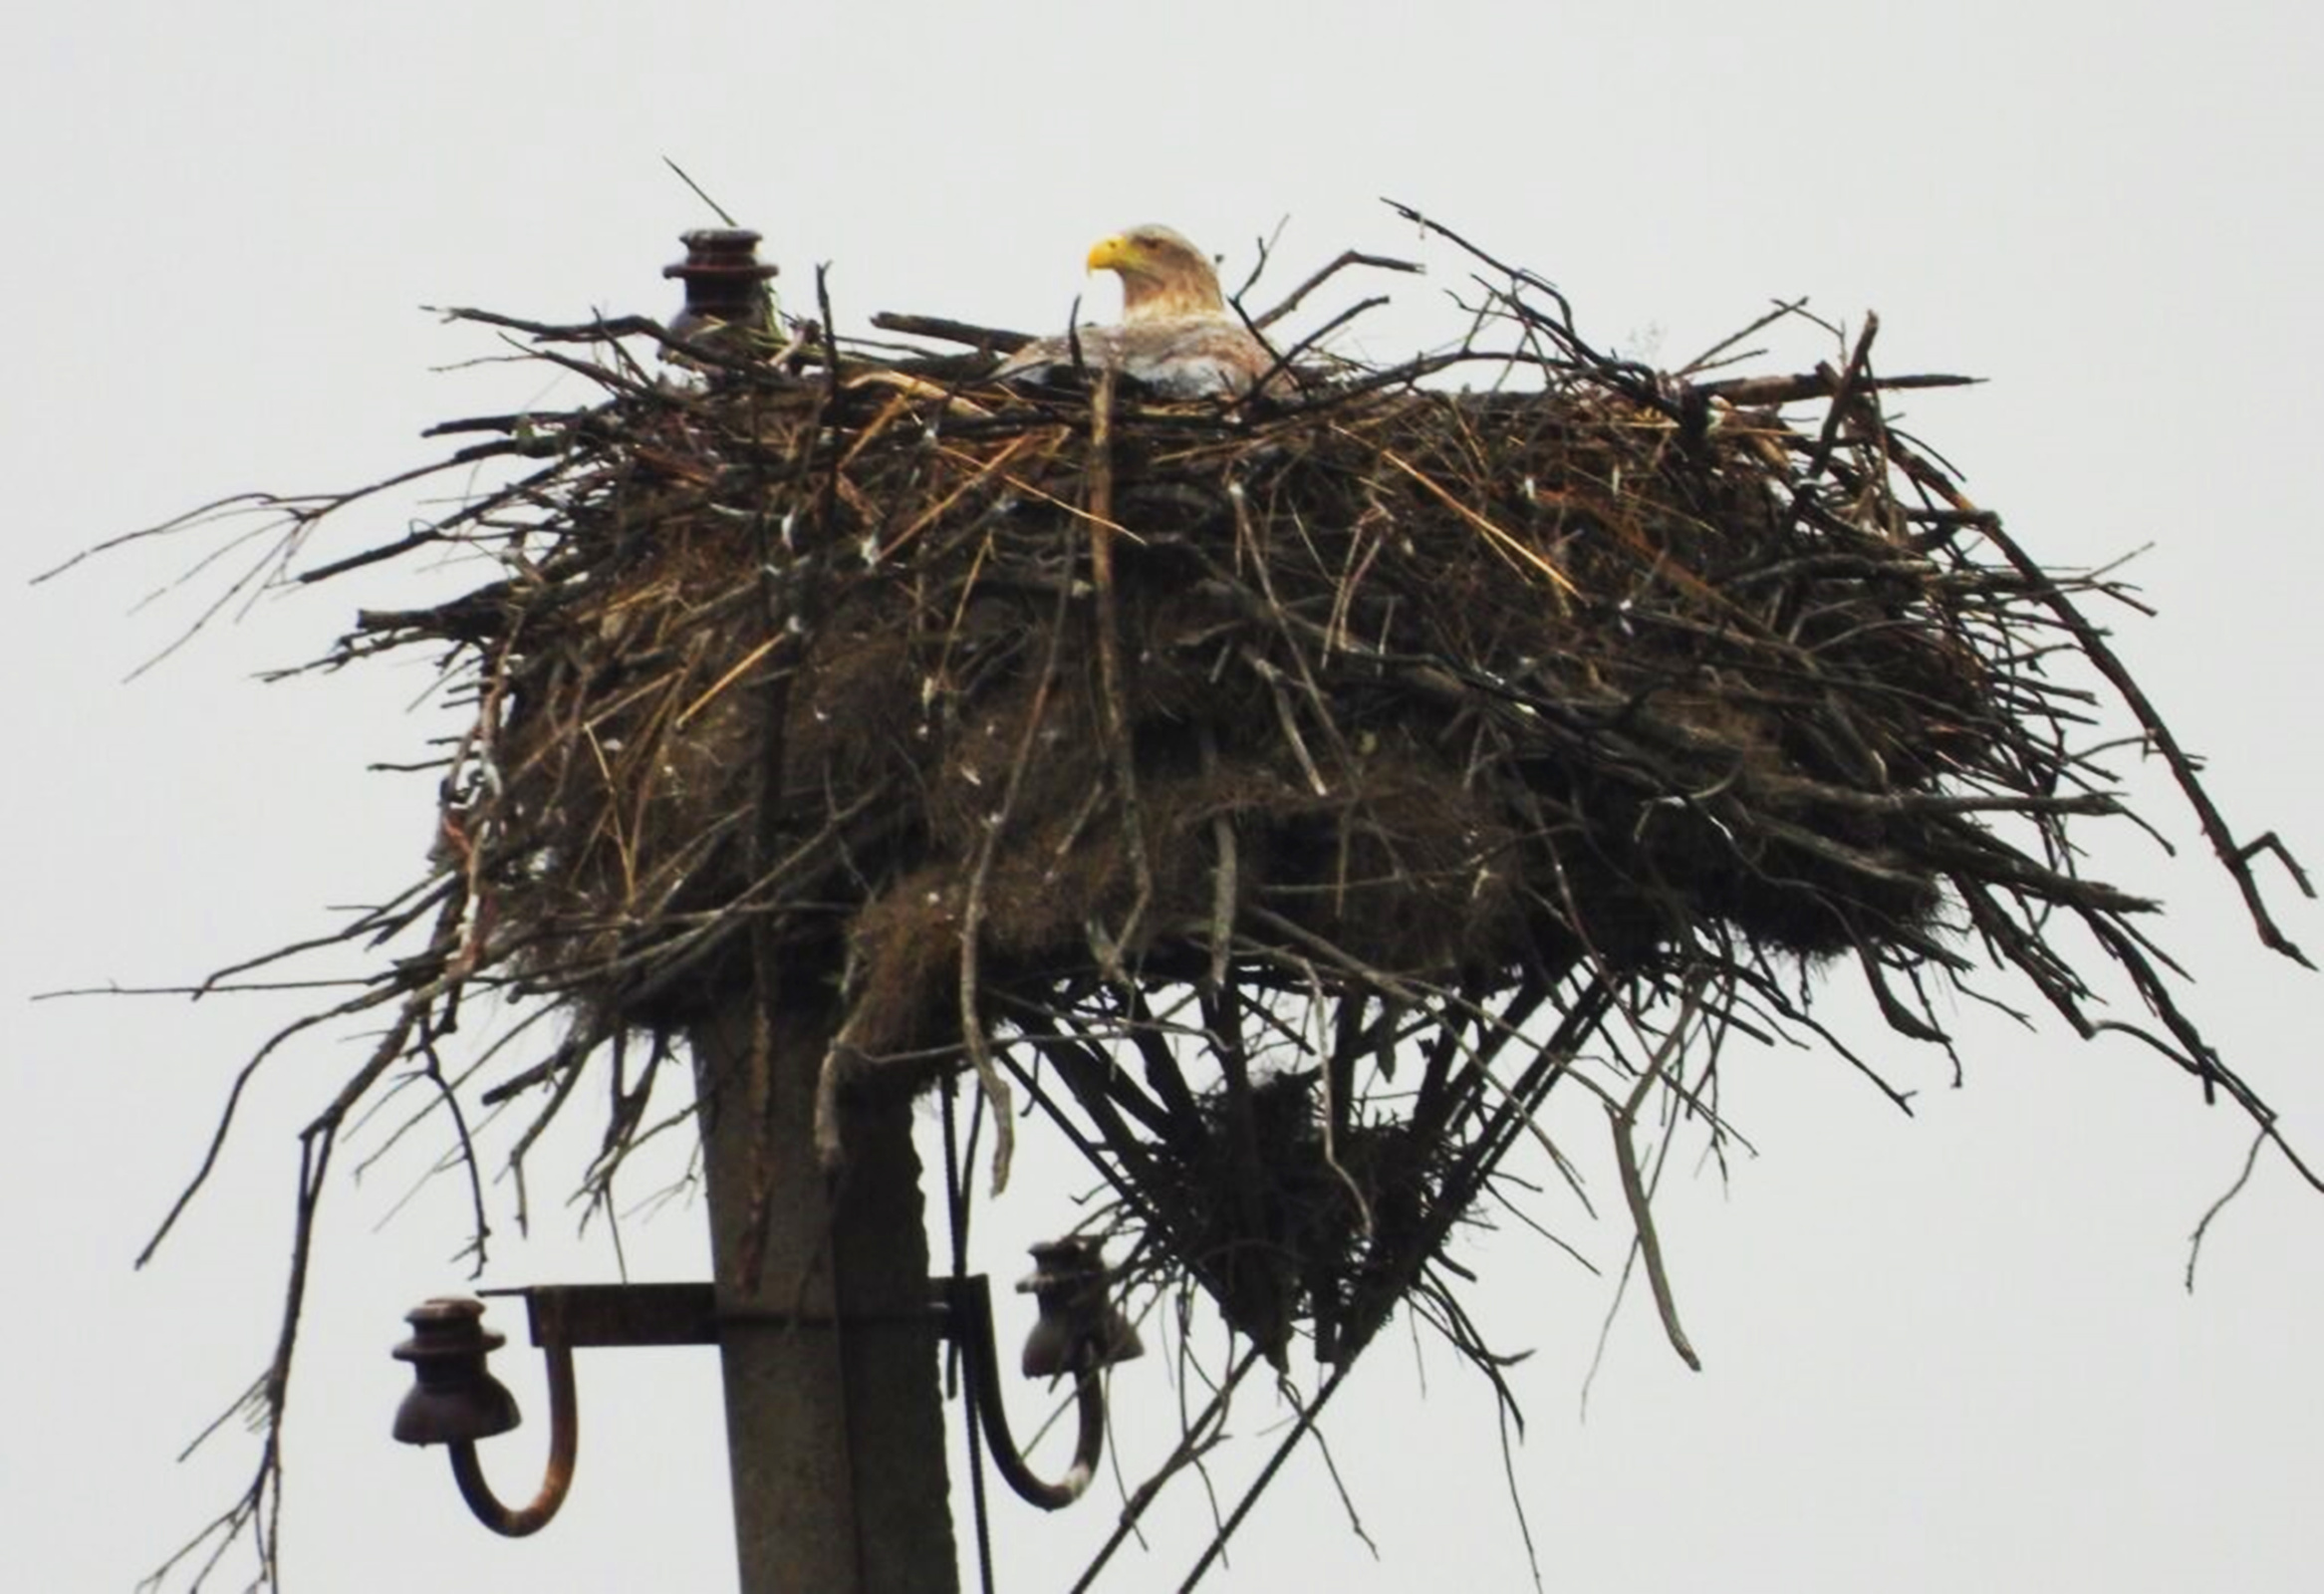 Гнездо орлана на искусственной платформе. Фото предоставлено Дагестанским заповедником